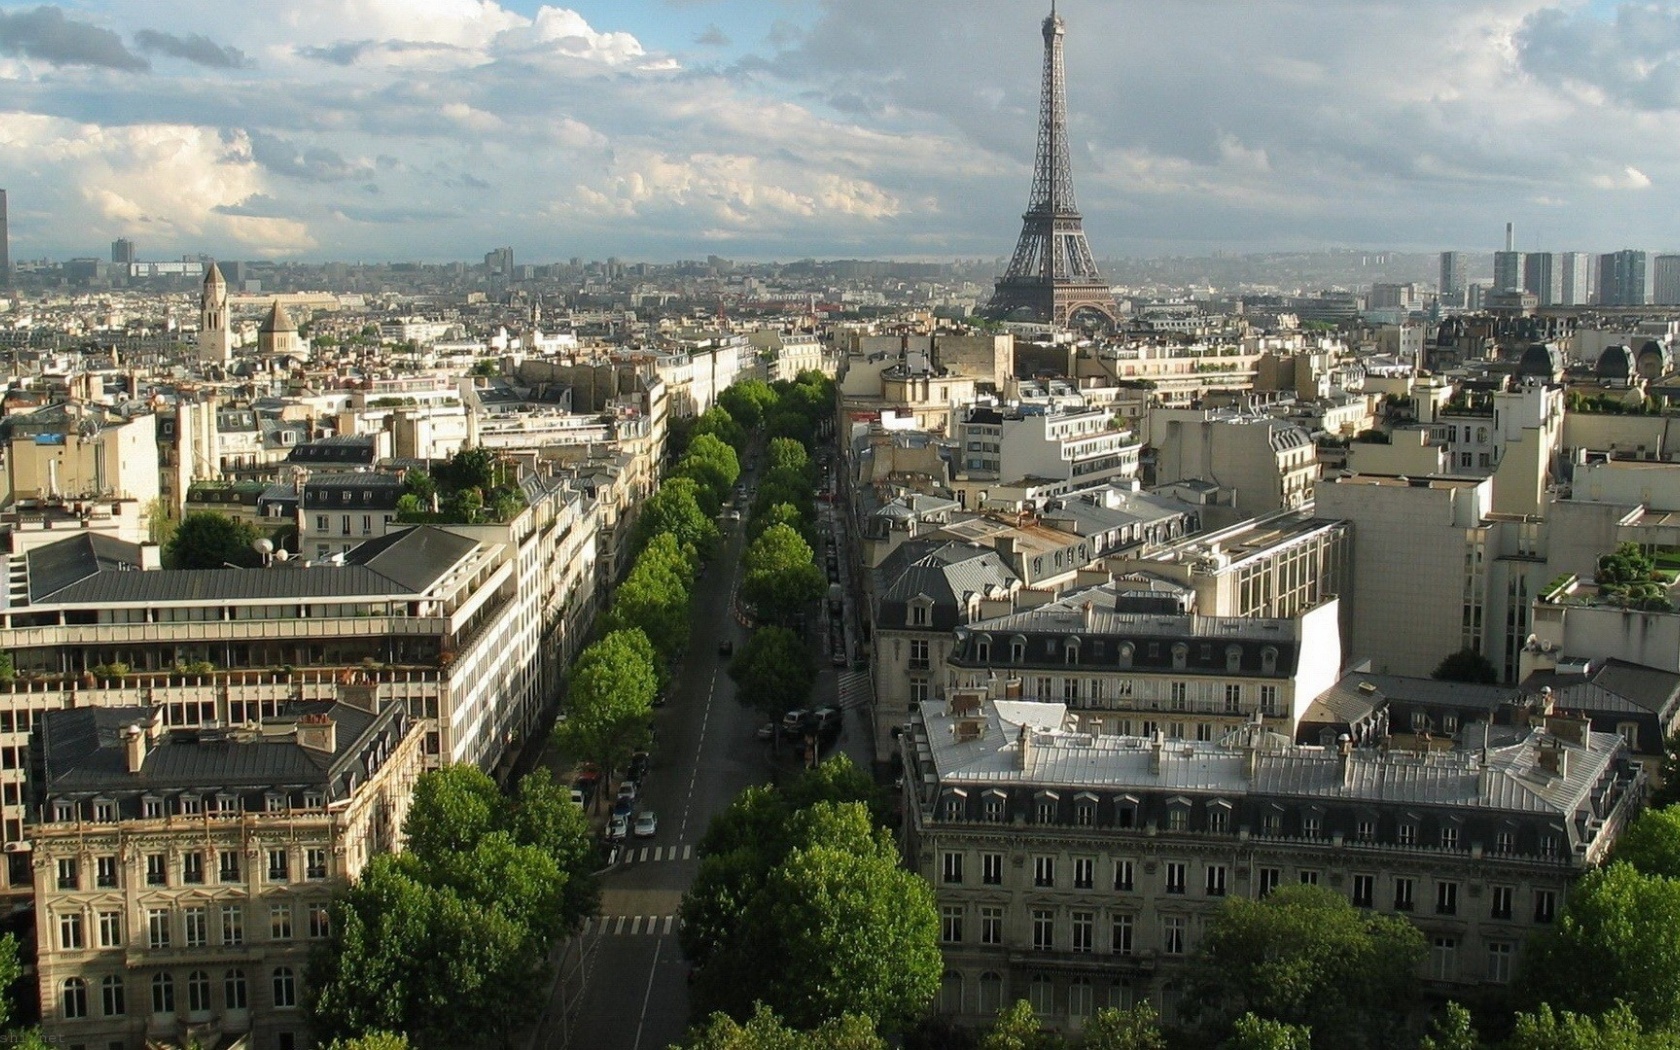 Eiffel Tower Paris France Landscape Cityscape Architecture City Landscape